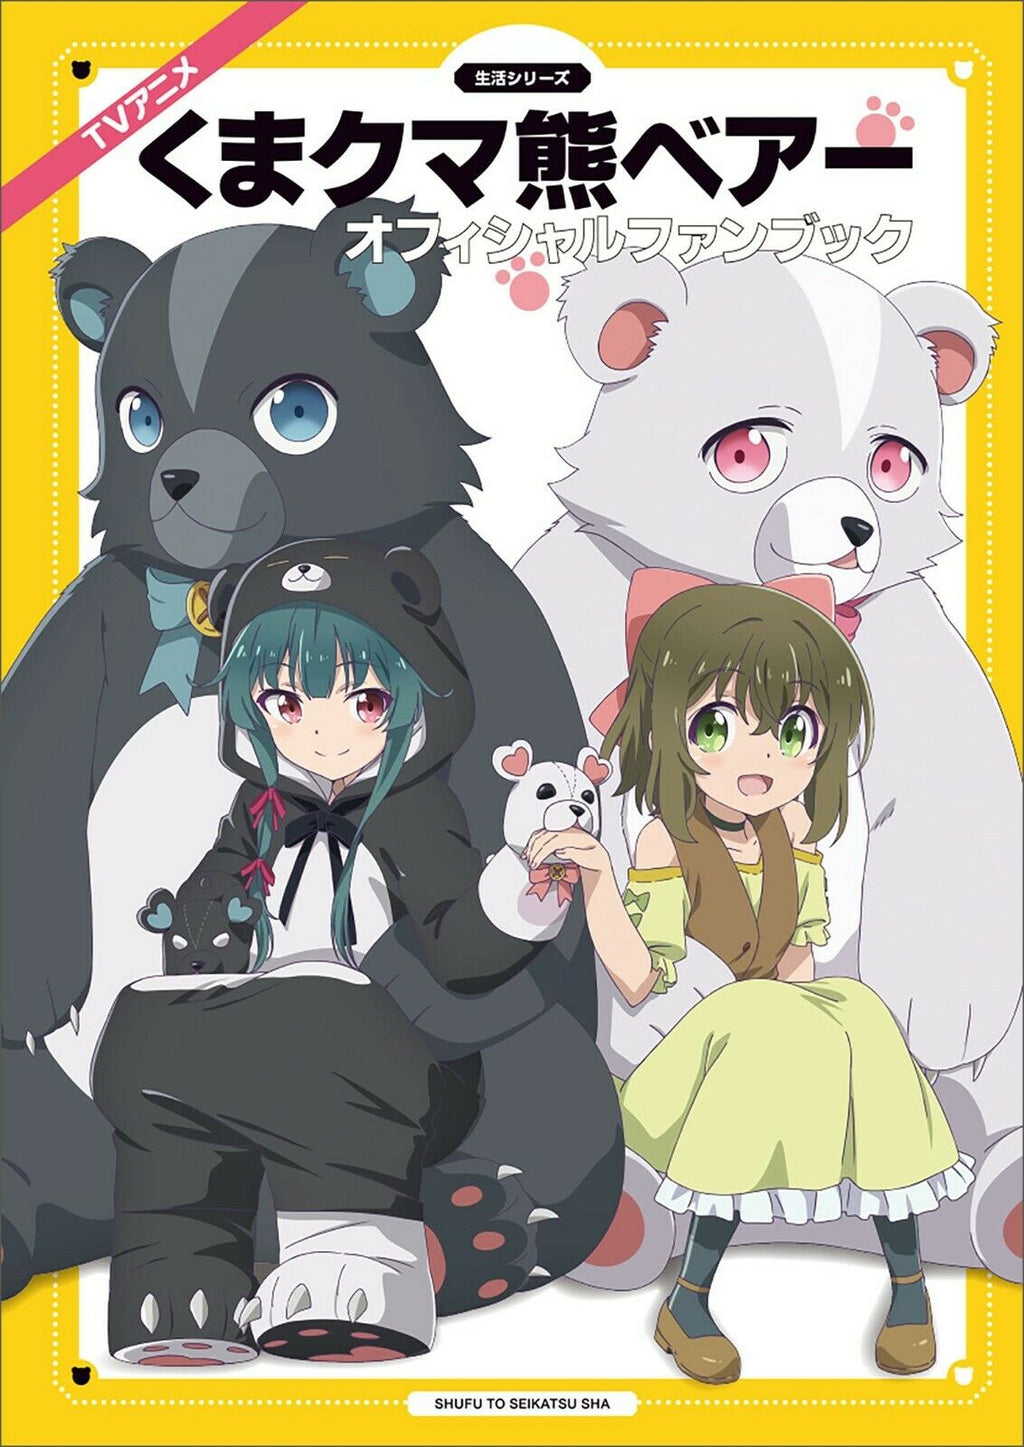 NEW Kuma Kuma Kuma Bear TV Animation Official Fan Book | JAPAN Anime